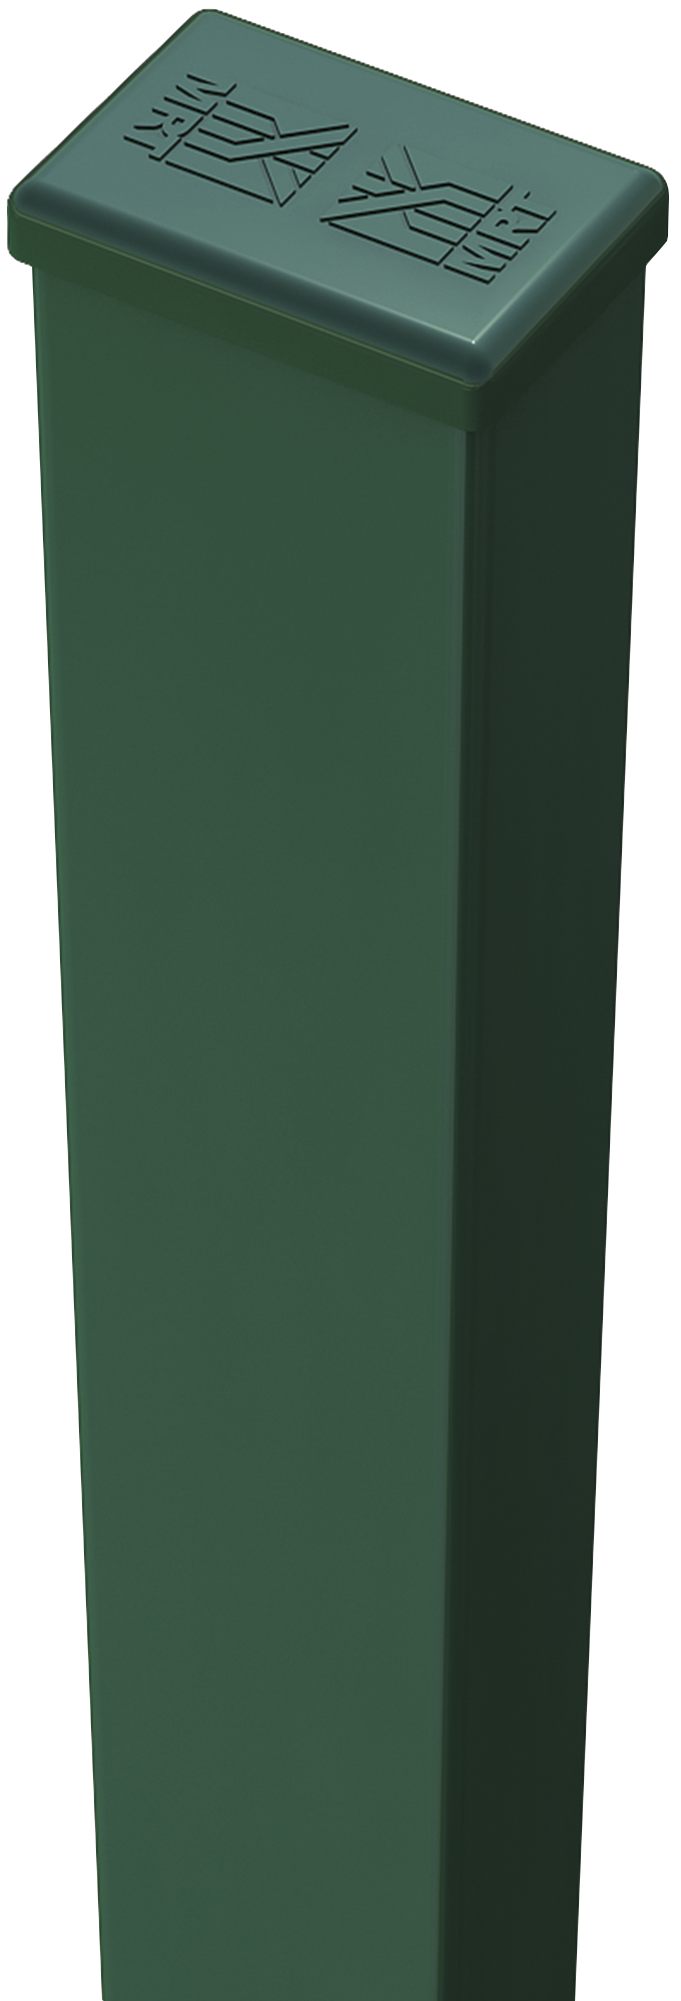 Poste de verde de 40mm y 185 cm